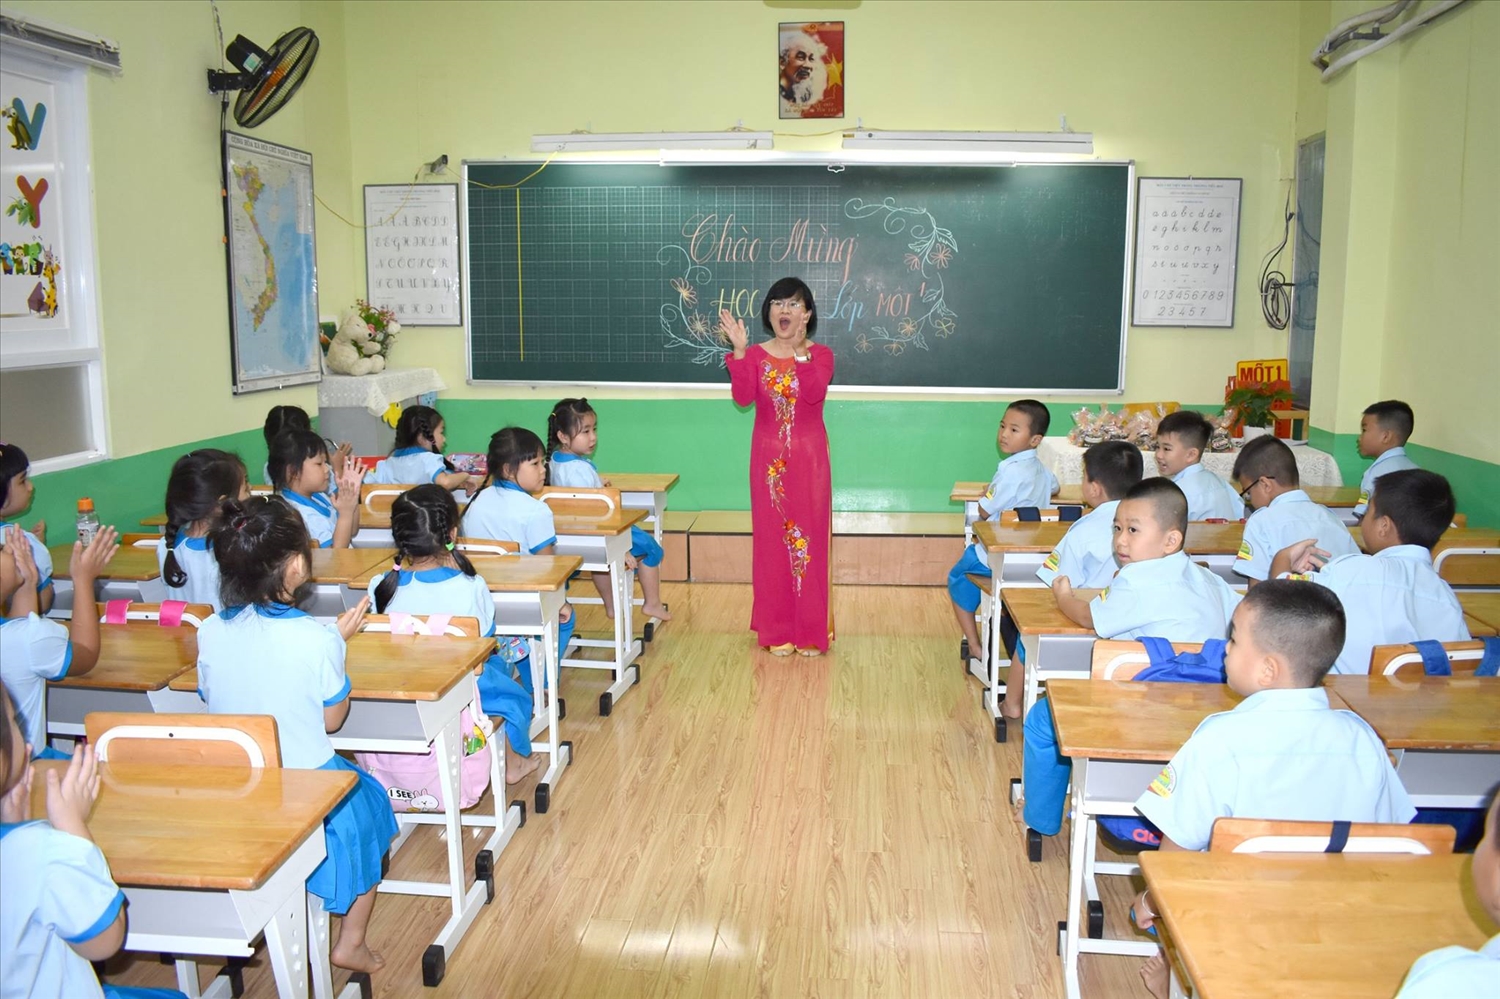 Mỗi giáo viên tiểu học ở TP. Hồ Chí Minh đang phải gánh thêm 12,8% khối lượng công việc vì sự thiếu hụt nhân sự. Ảnh minh họa